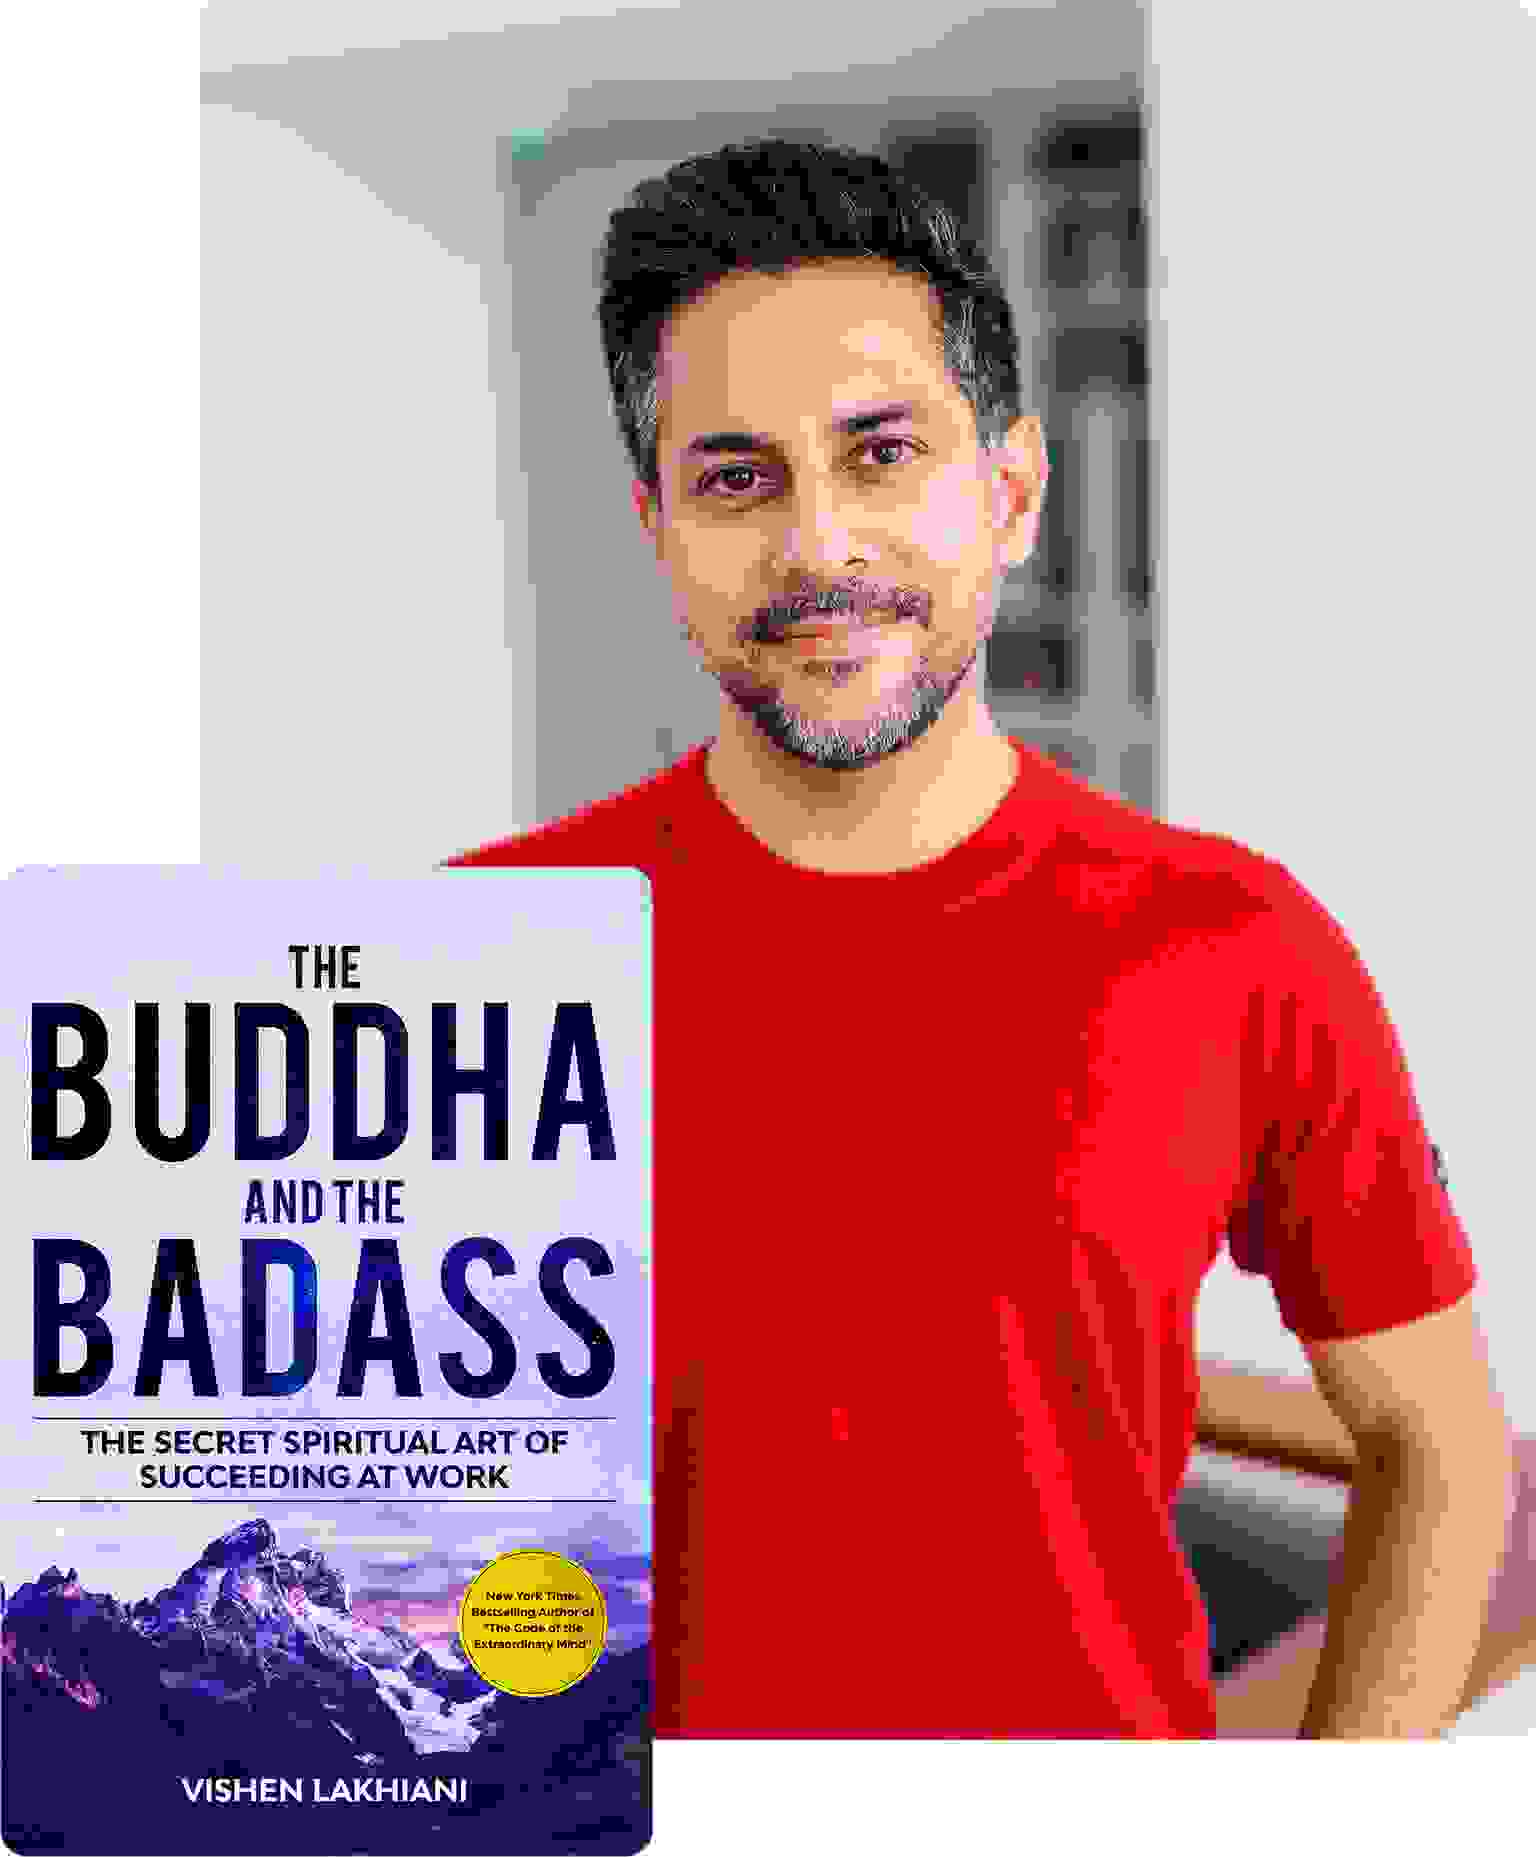 Vishen Lakhiani, author of "The Buddha and The Badass"